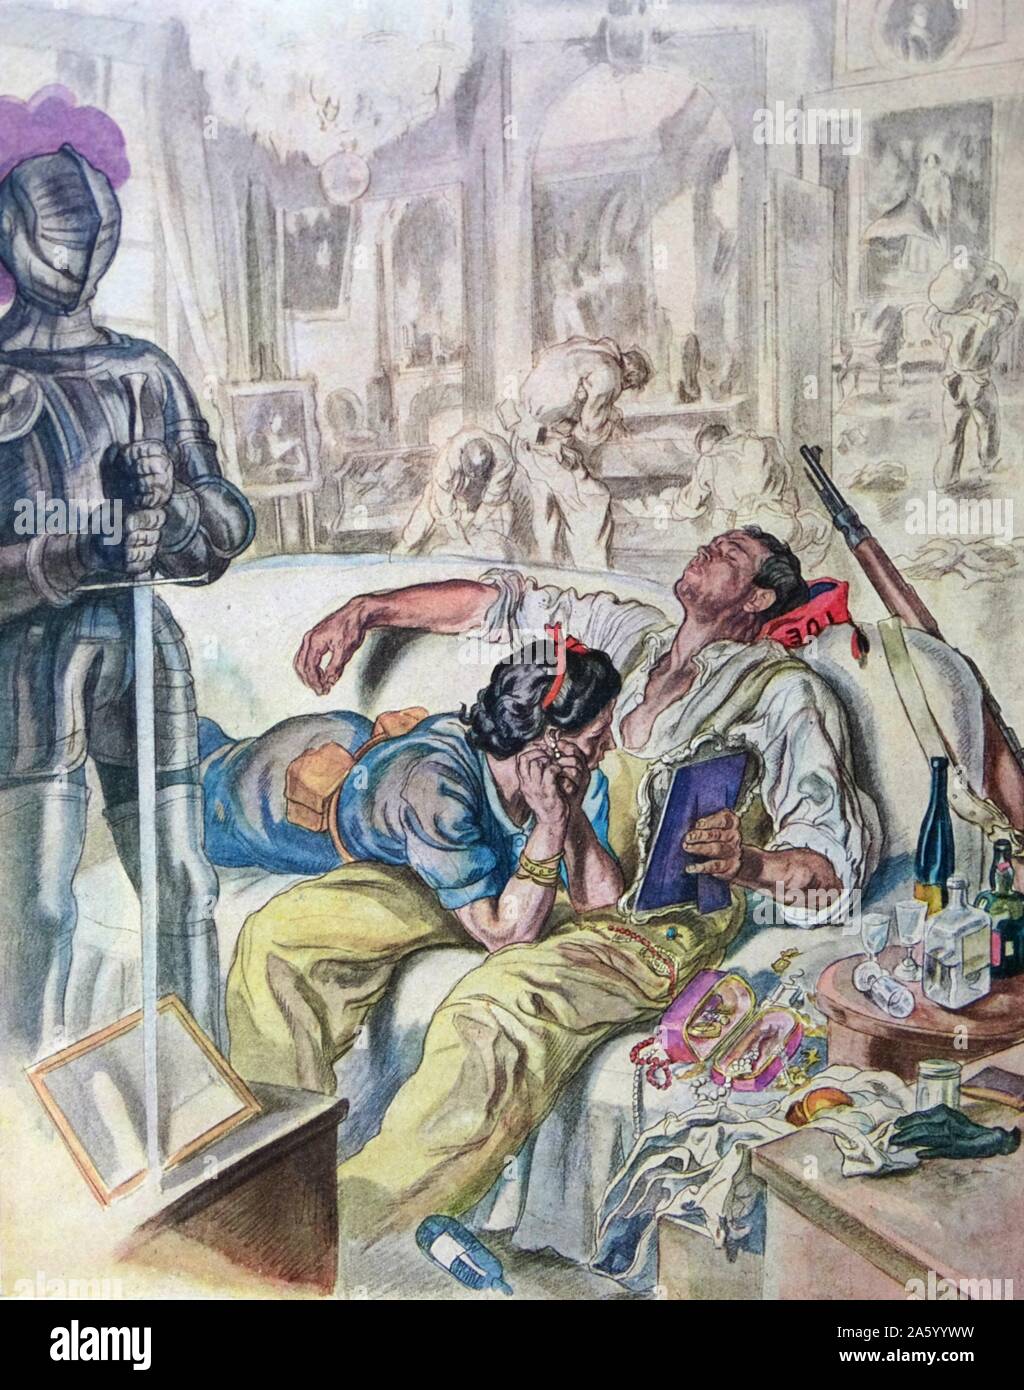 Illustration von der spanischen Nationalisten Künstler Carlos Saenz De Tejada abbildenden anarchistischen Miliz Plünderungen ein Königspalast in Madrid während des spanischen Bürgerkriegs. Datiert 1936 Stockfoto